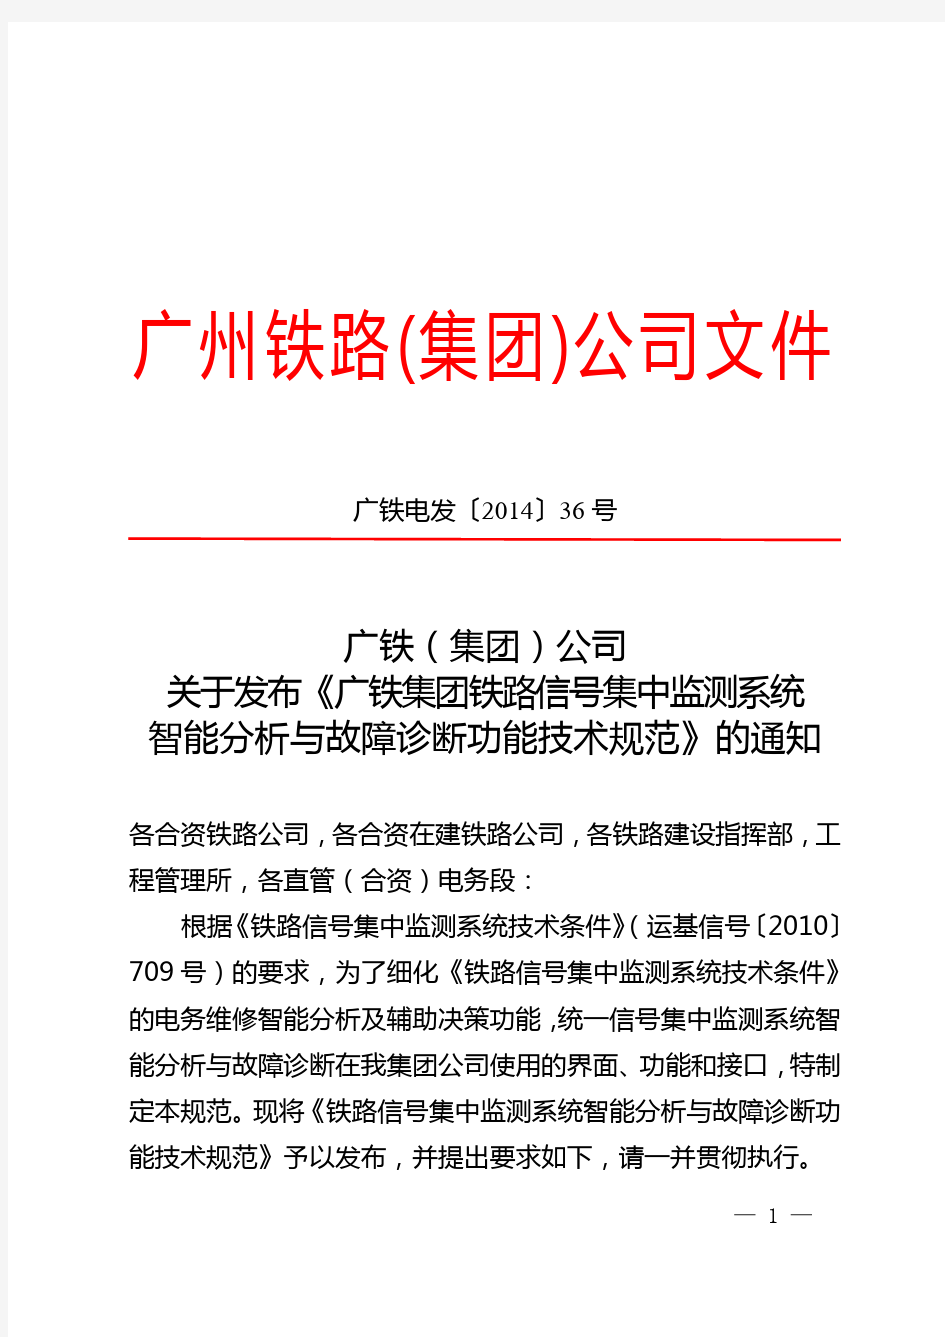 (广铁电发〔2014〕36号)广铁公司关于发布《铁路信号集中监测系统智能分析与故障诊断功能技术规范》